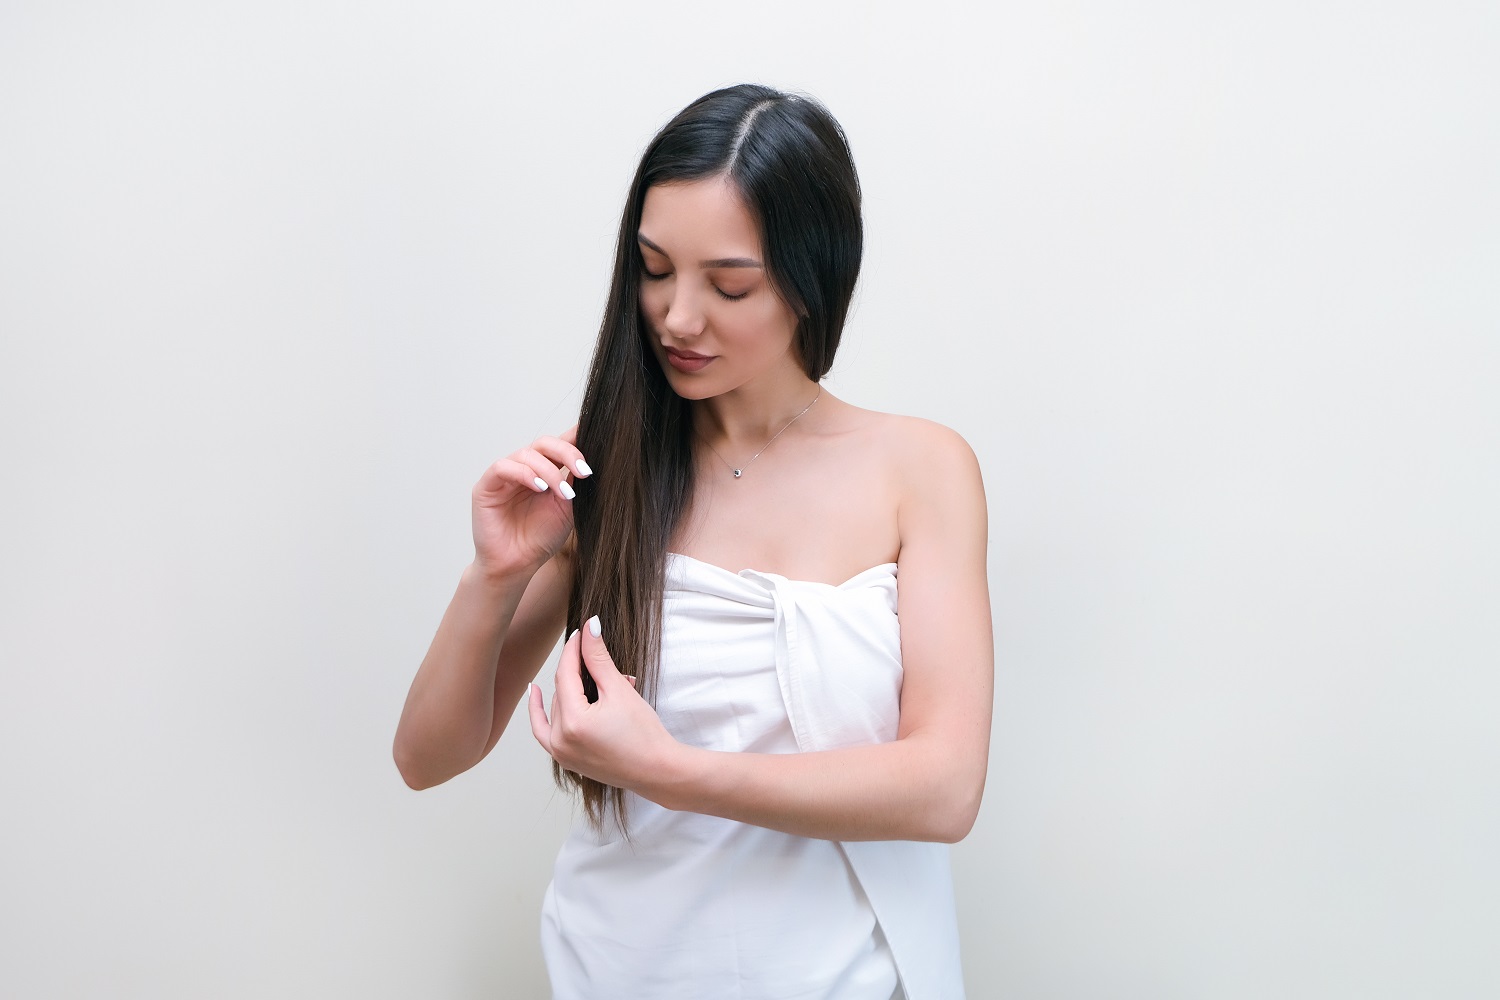 الدليل الشامل حول طرق تنعيم الشعر والحصول على خصلات سلسة وجذابة